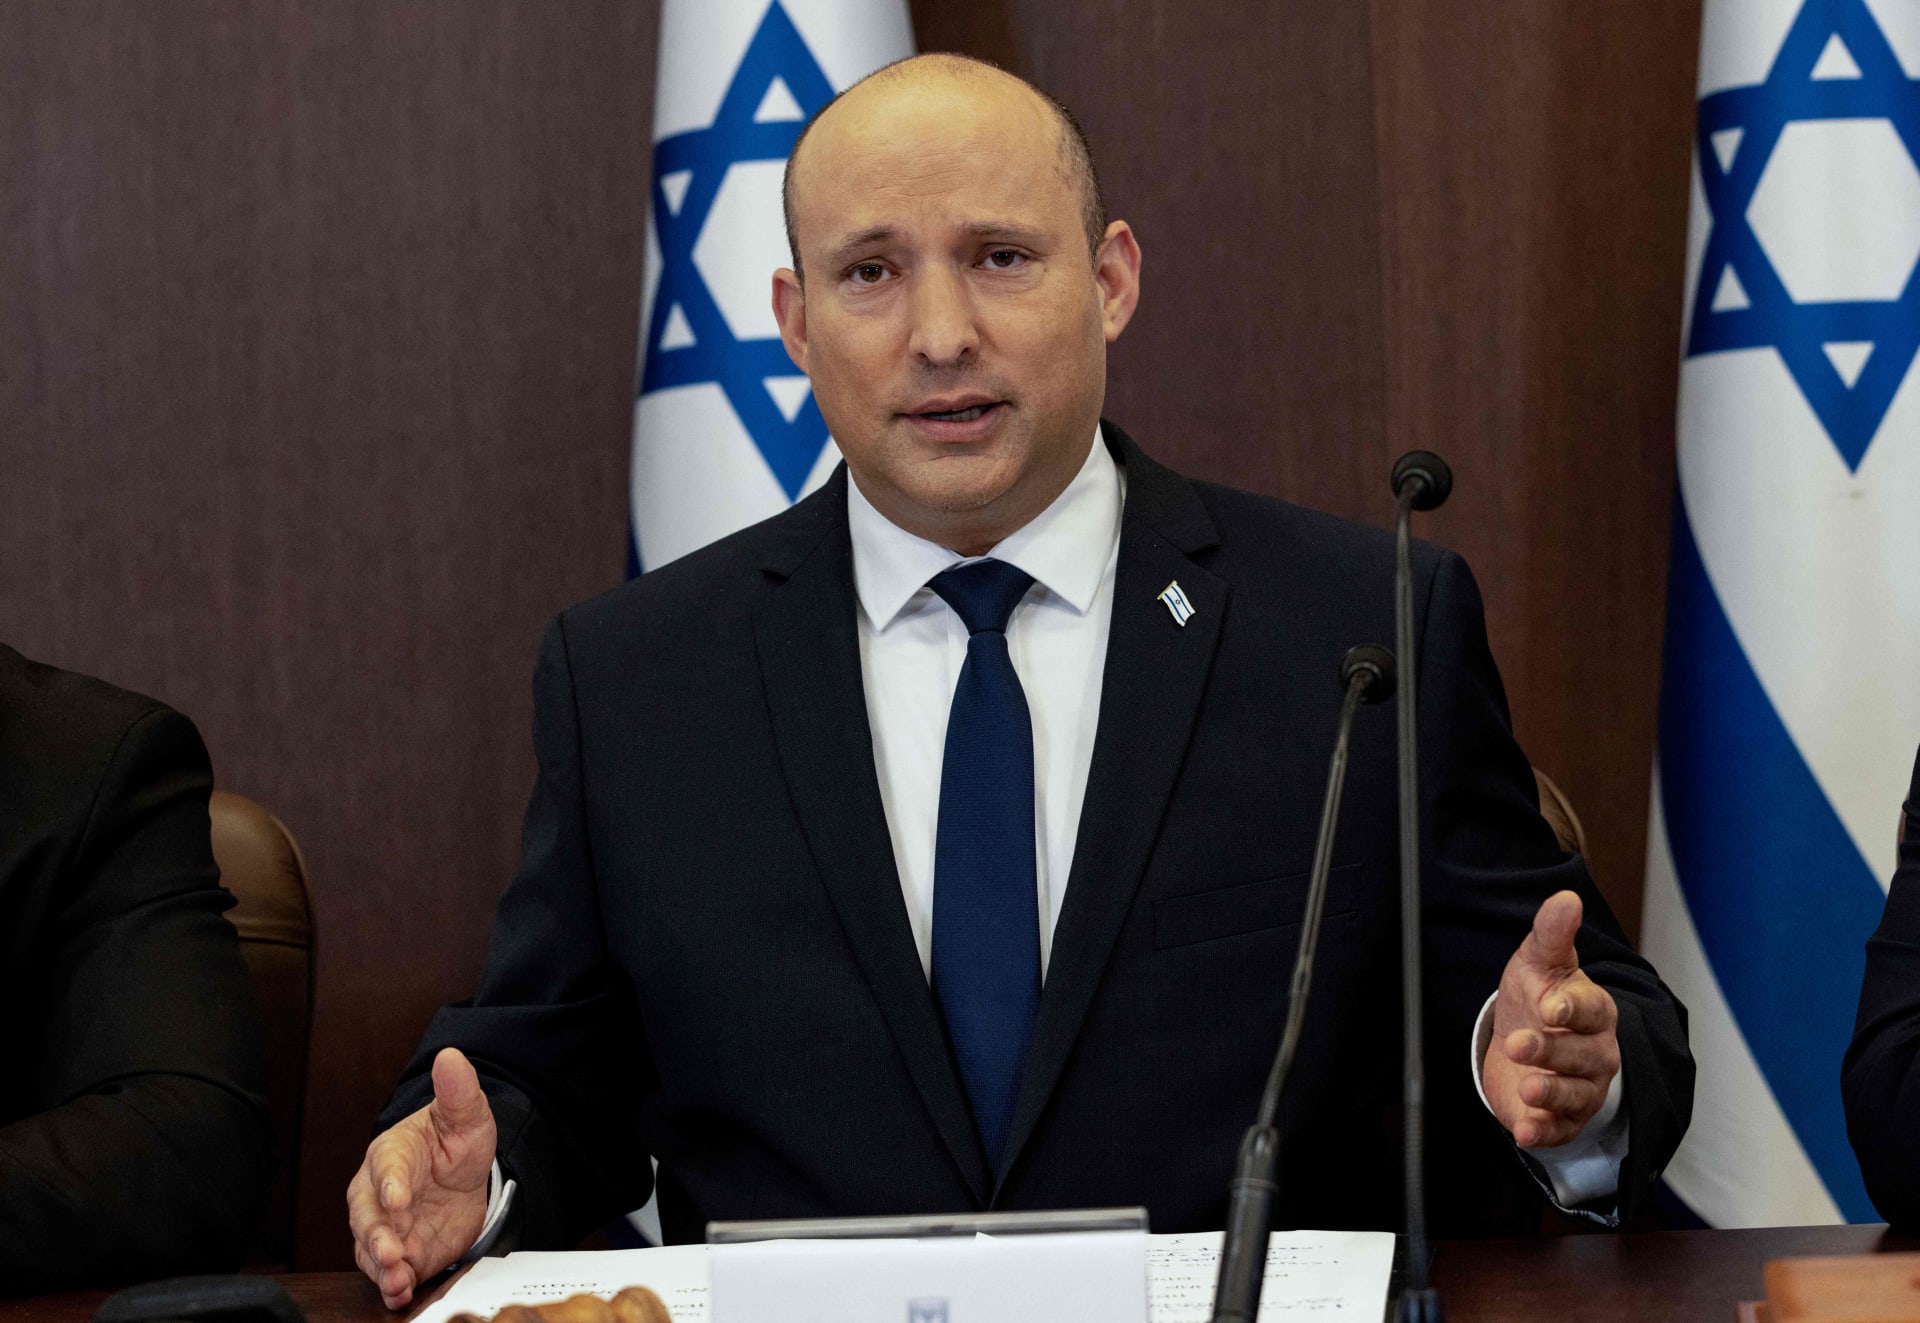 رئيس وزراء إسرائيل يوجه رسالة "تفاؤل" بنهاية زيارته إلى الإمارات.. وتأسيس صندوق مشترك بين البلدين